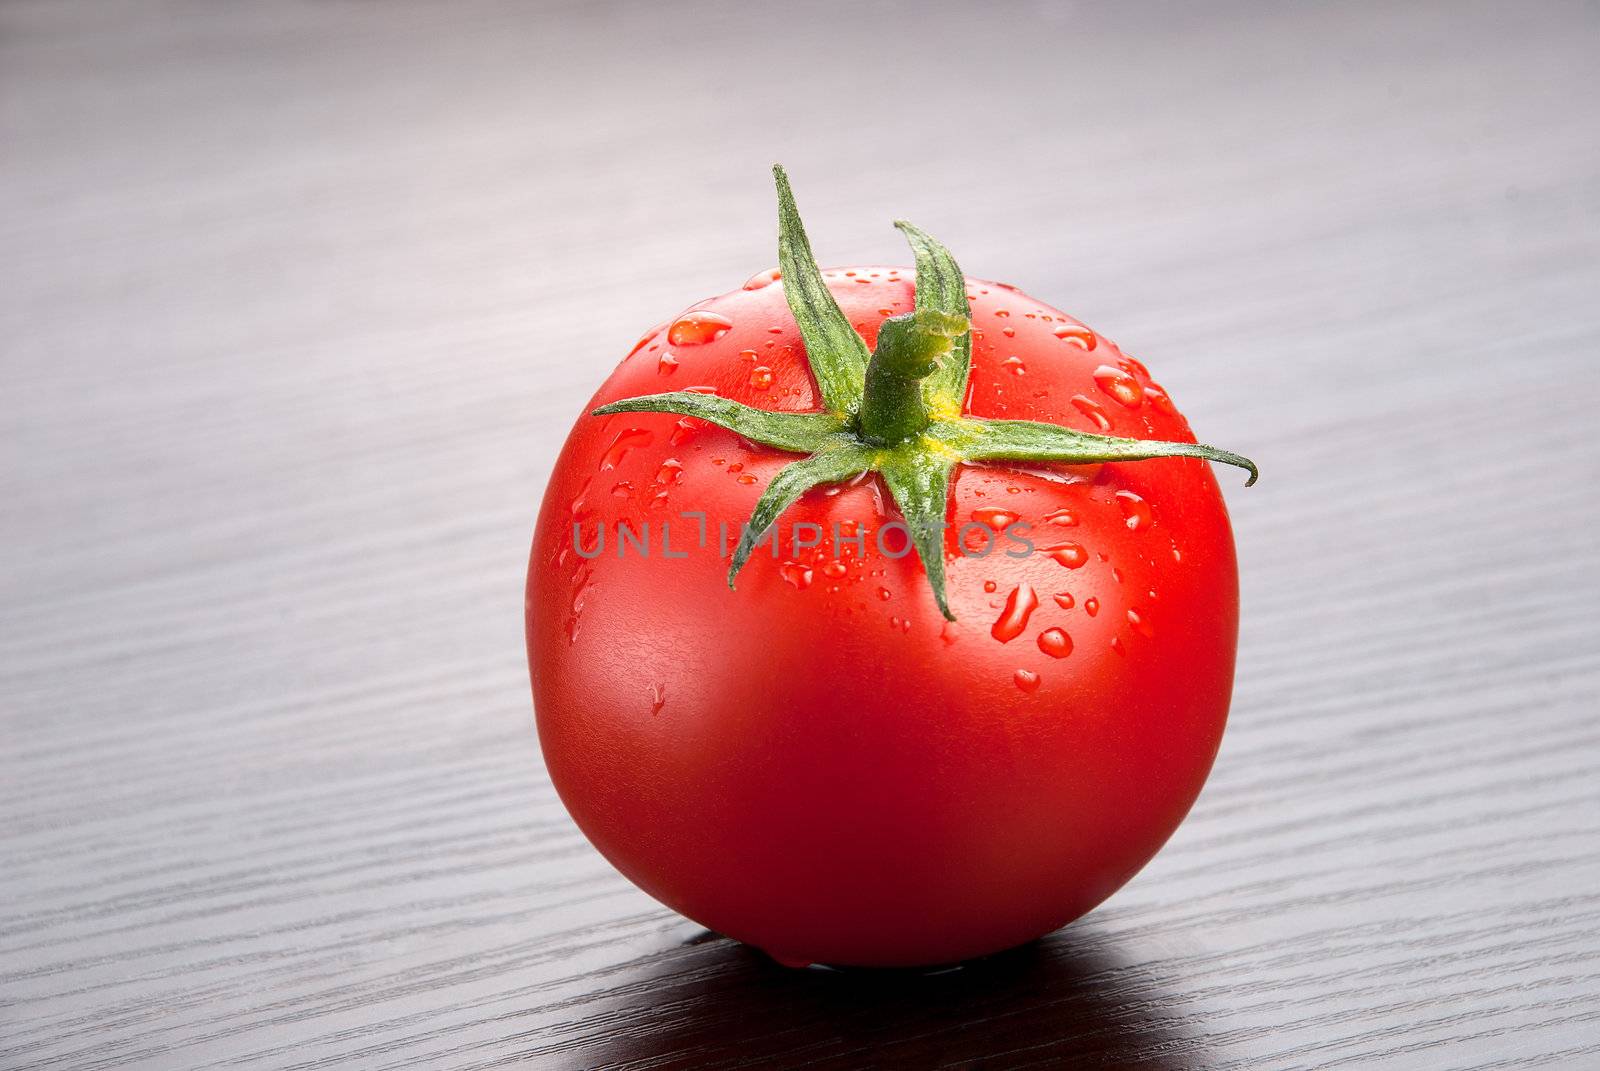 Tomato by GennadiyShel